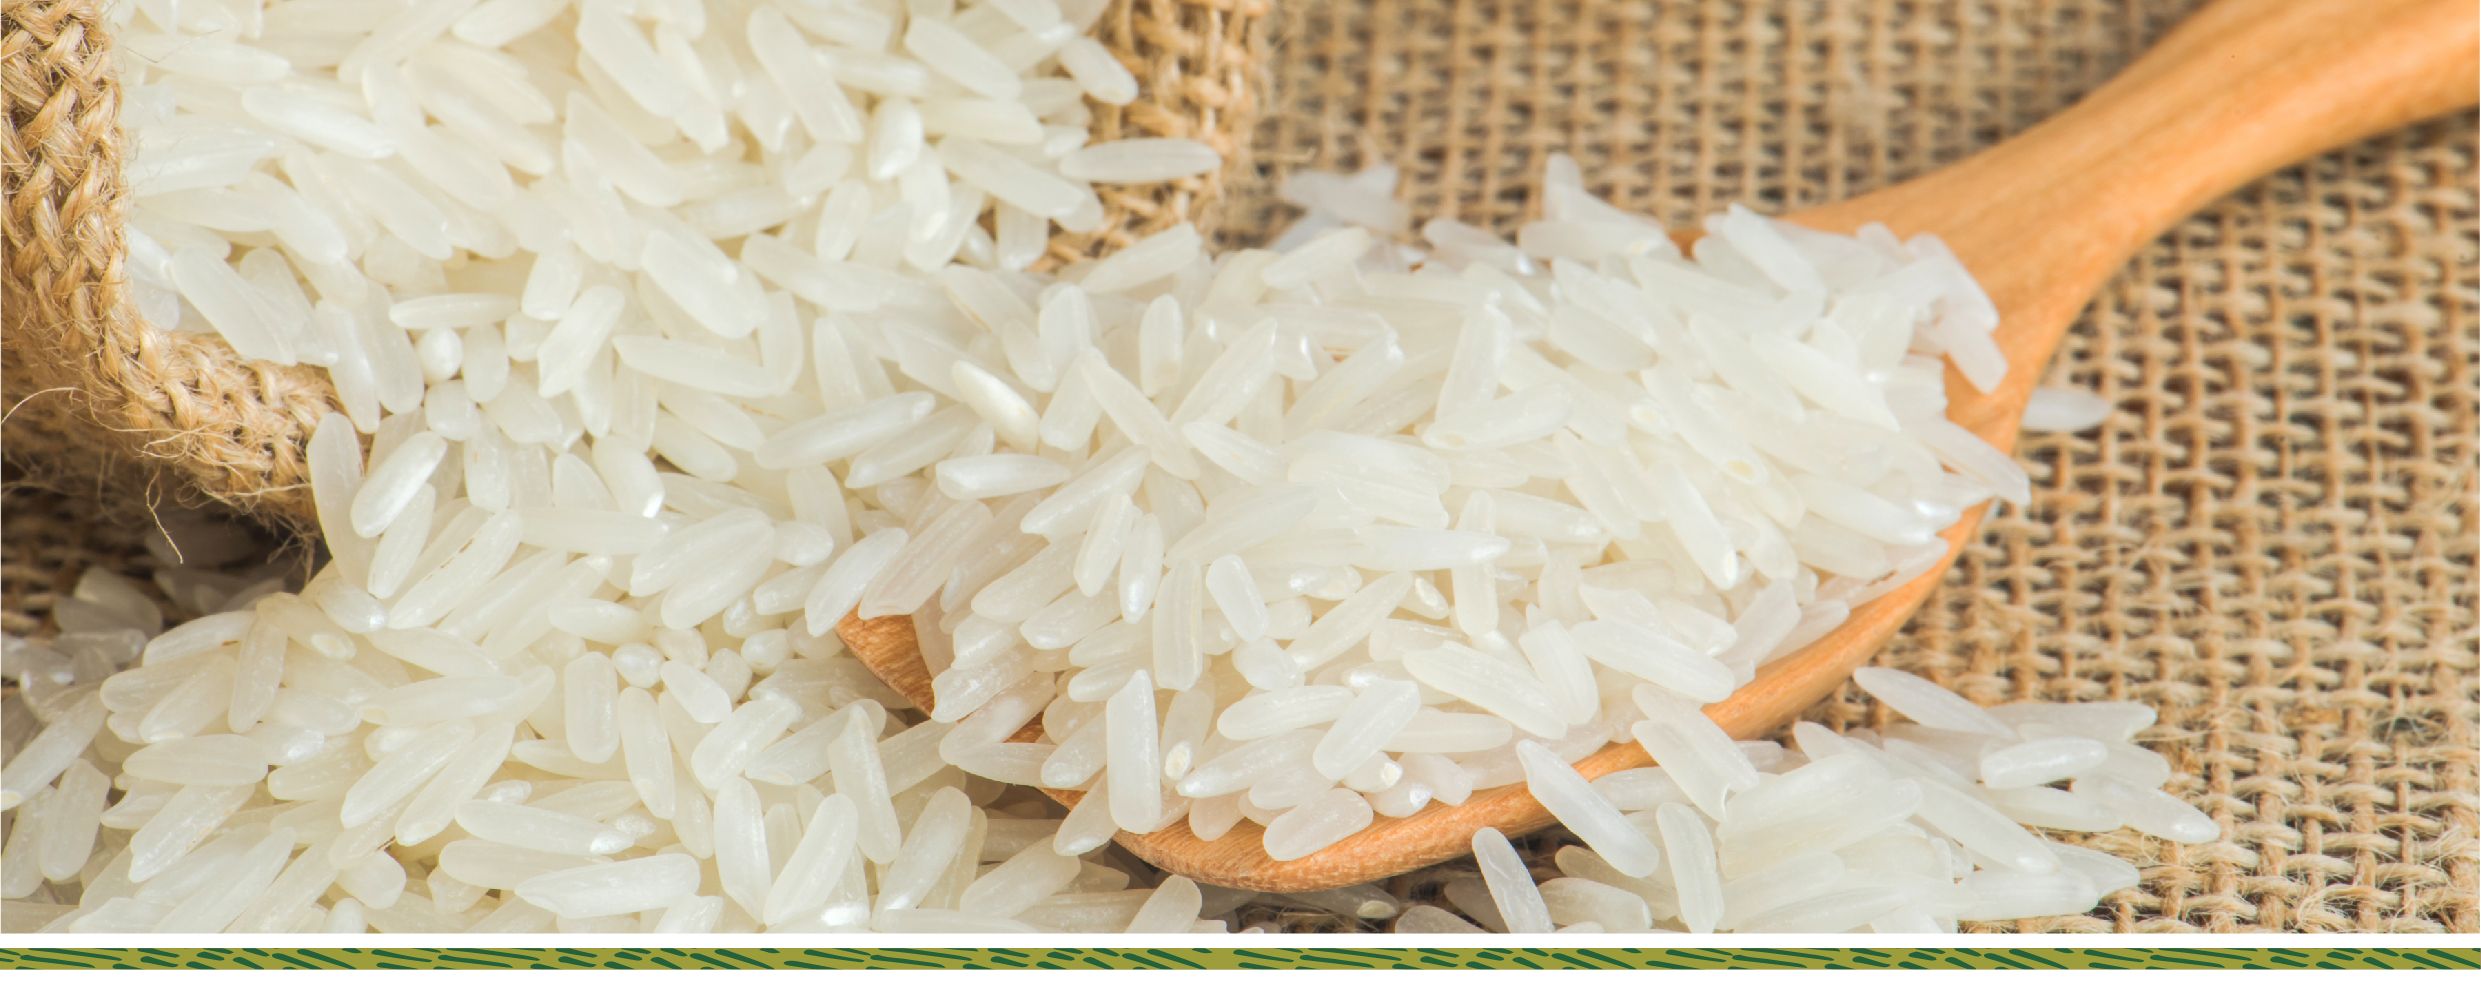 Kinh doanh gạo sạch quá dễ: không cần nhập hàng và kho bãi tin-tuc 